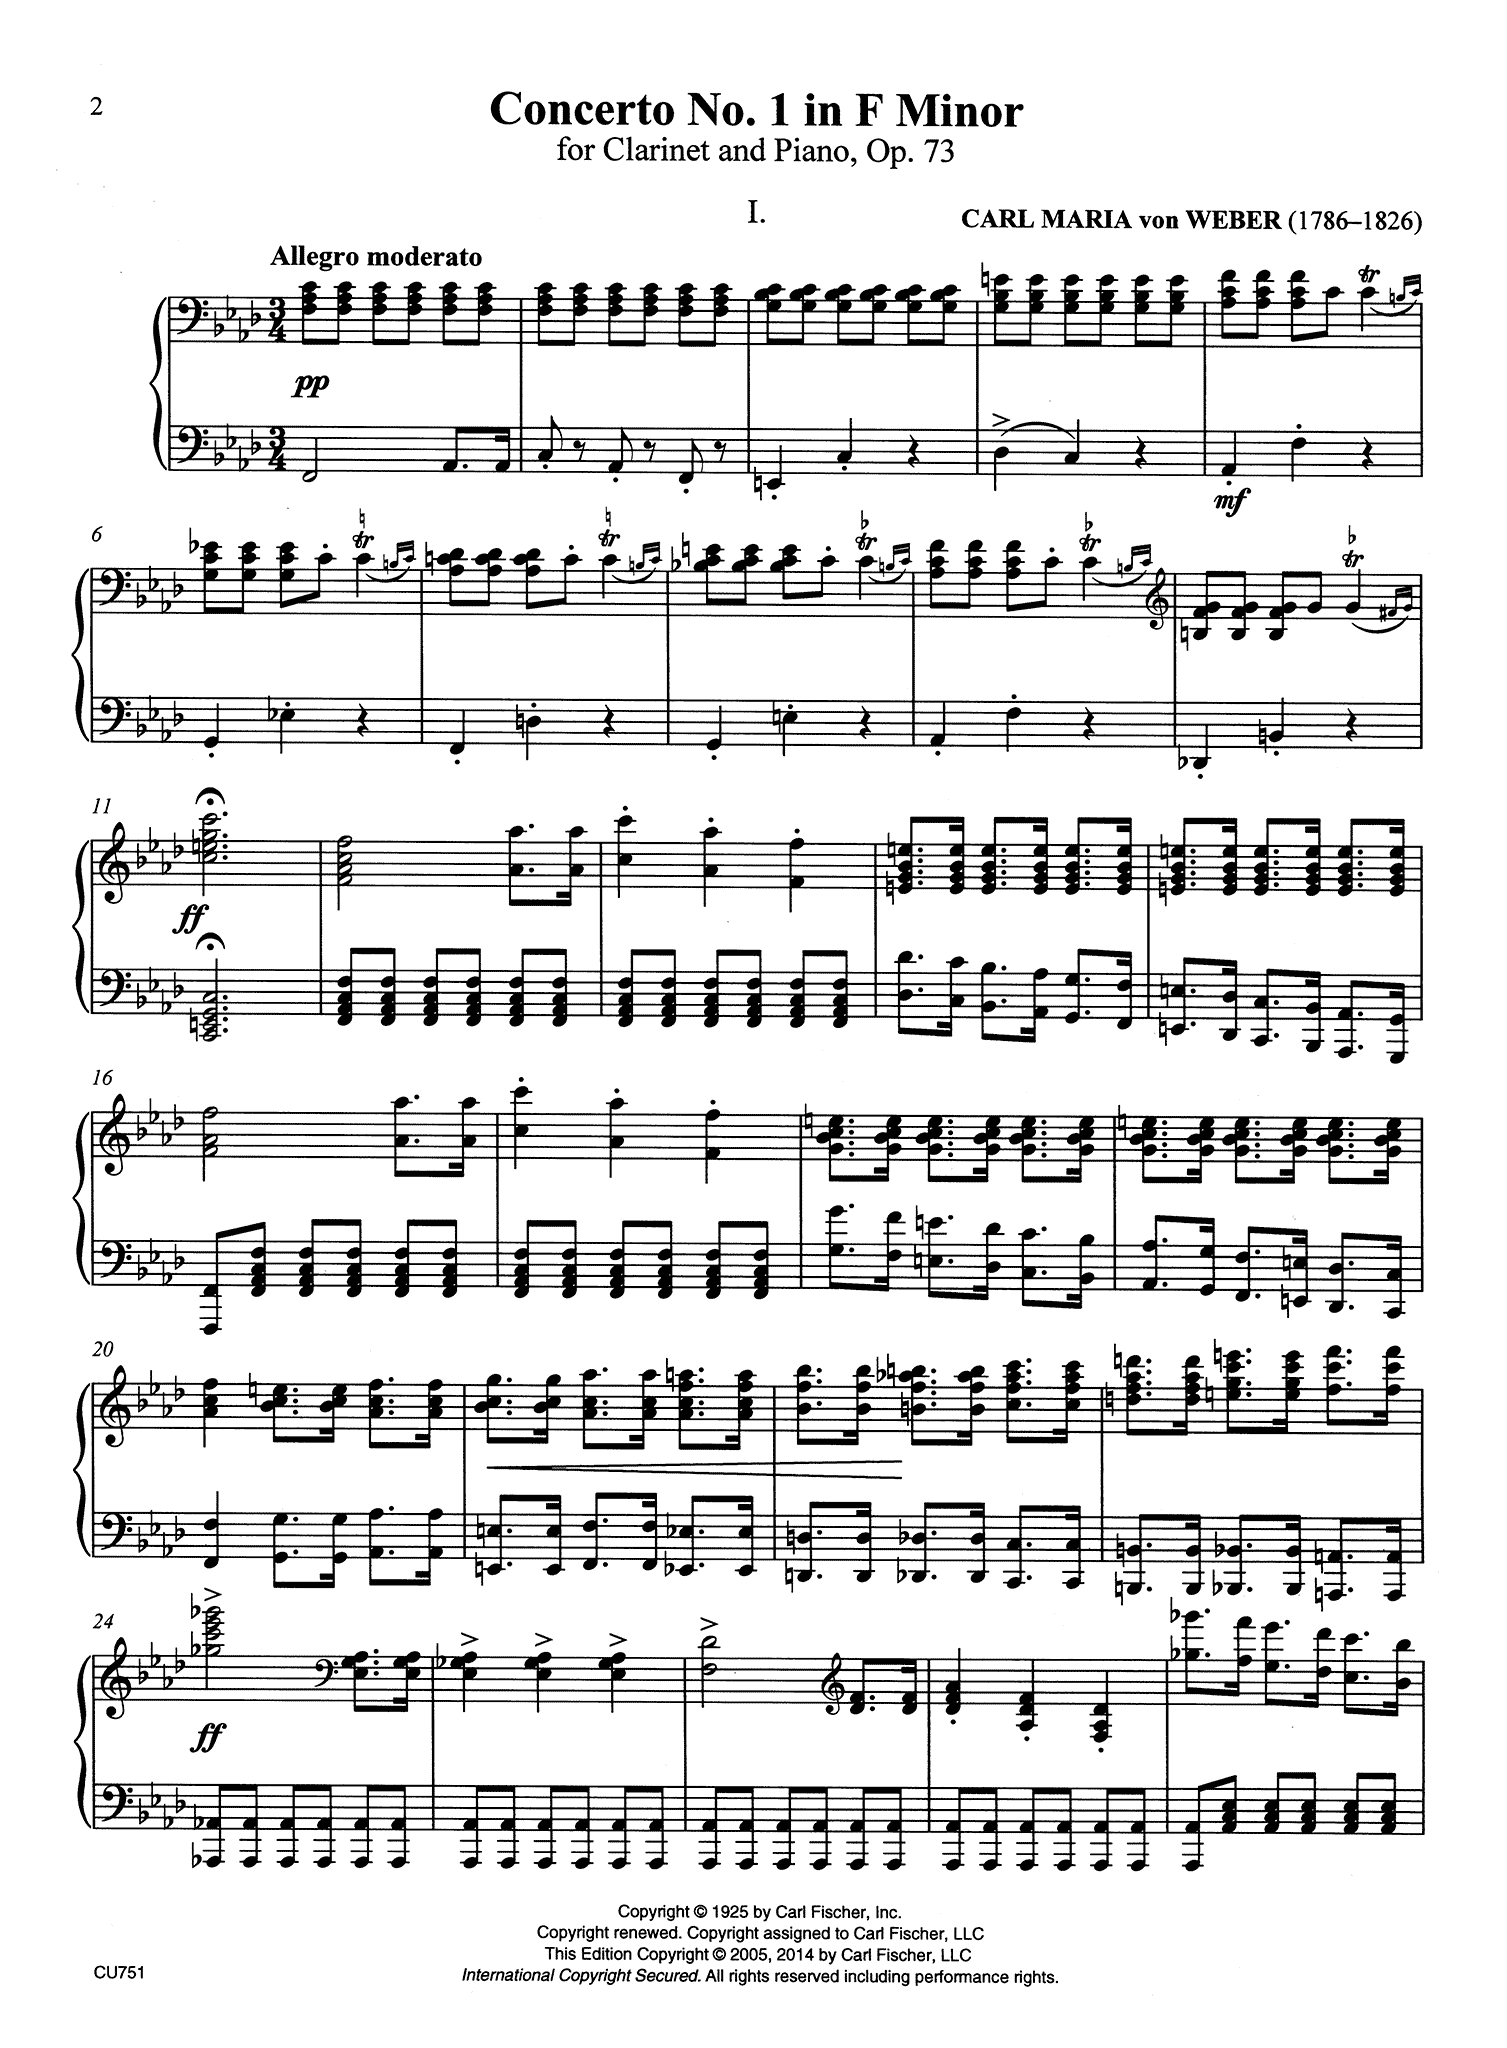 Clarinet Concerto No. 1, Op. 73 - Movement 1